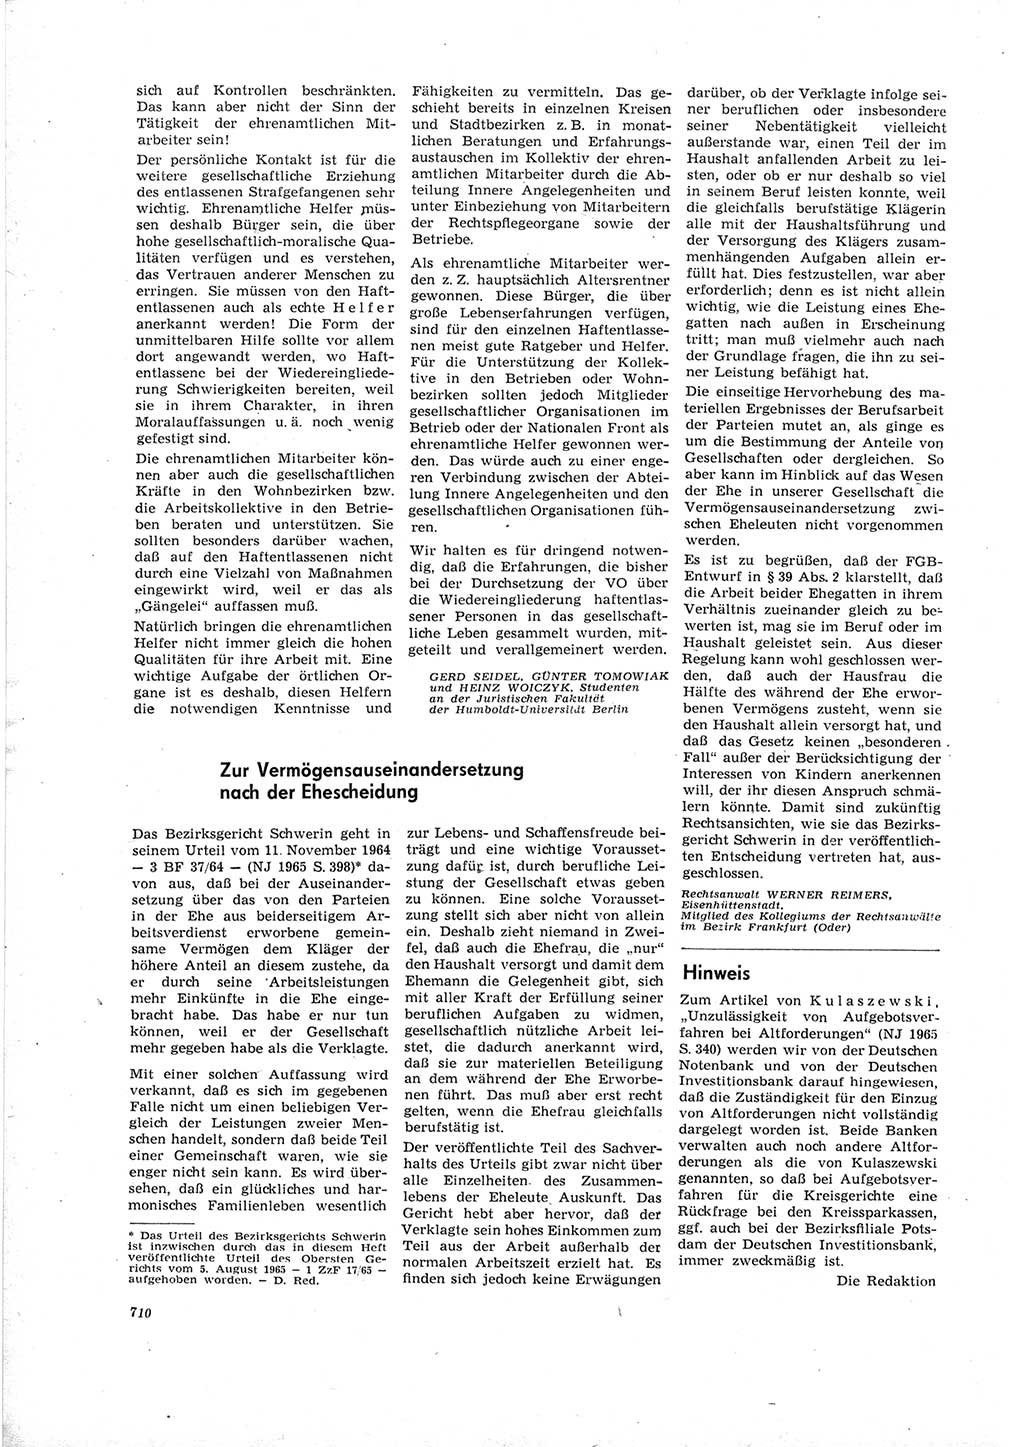 Neue Justiz (NJ), Zeitschrift für Recht und Rechtswissenschaft [Deutsche Demokratische Republik (DDR)], 19. Jahrgang 1965, Seite 710 (NJ DDR 1965, S. 710)